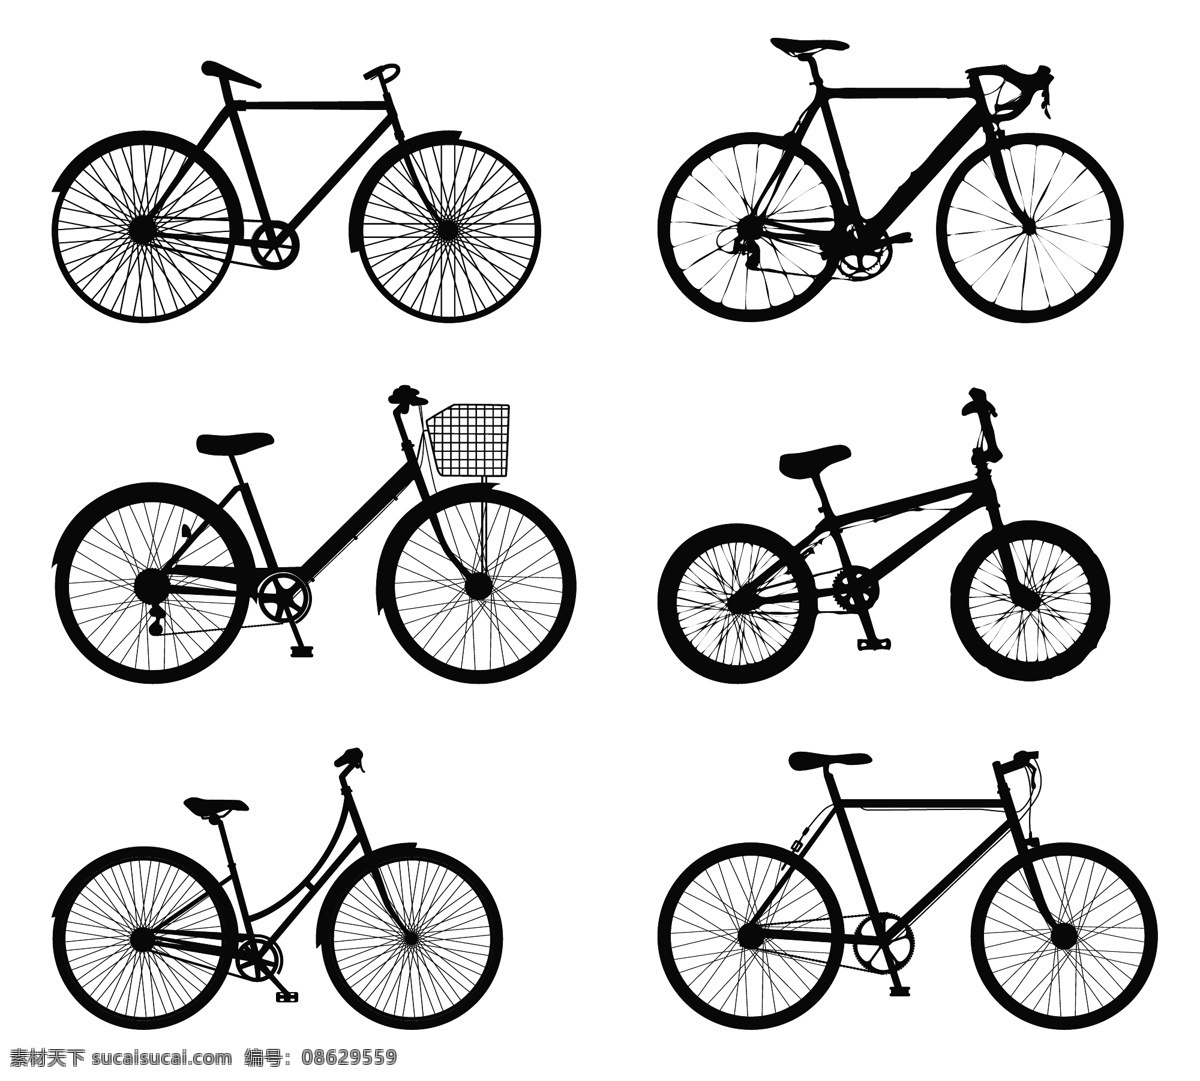 详细 自行车 剪影 骑自行车 人 详细的自行车 自行车的剪影 剪影轮廓 人物 矢量 运动 具体 自行 车骑 轮廓 矢量图 花纹花边